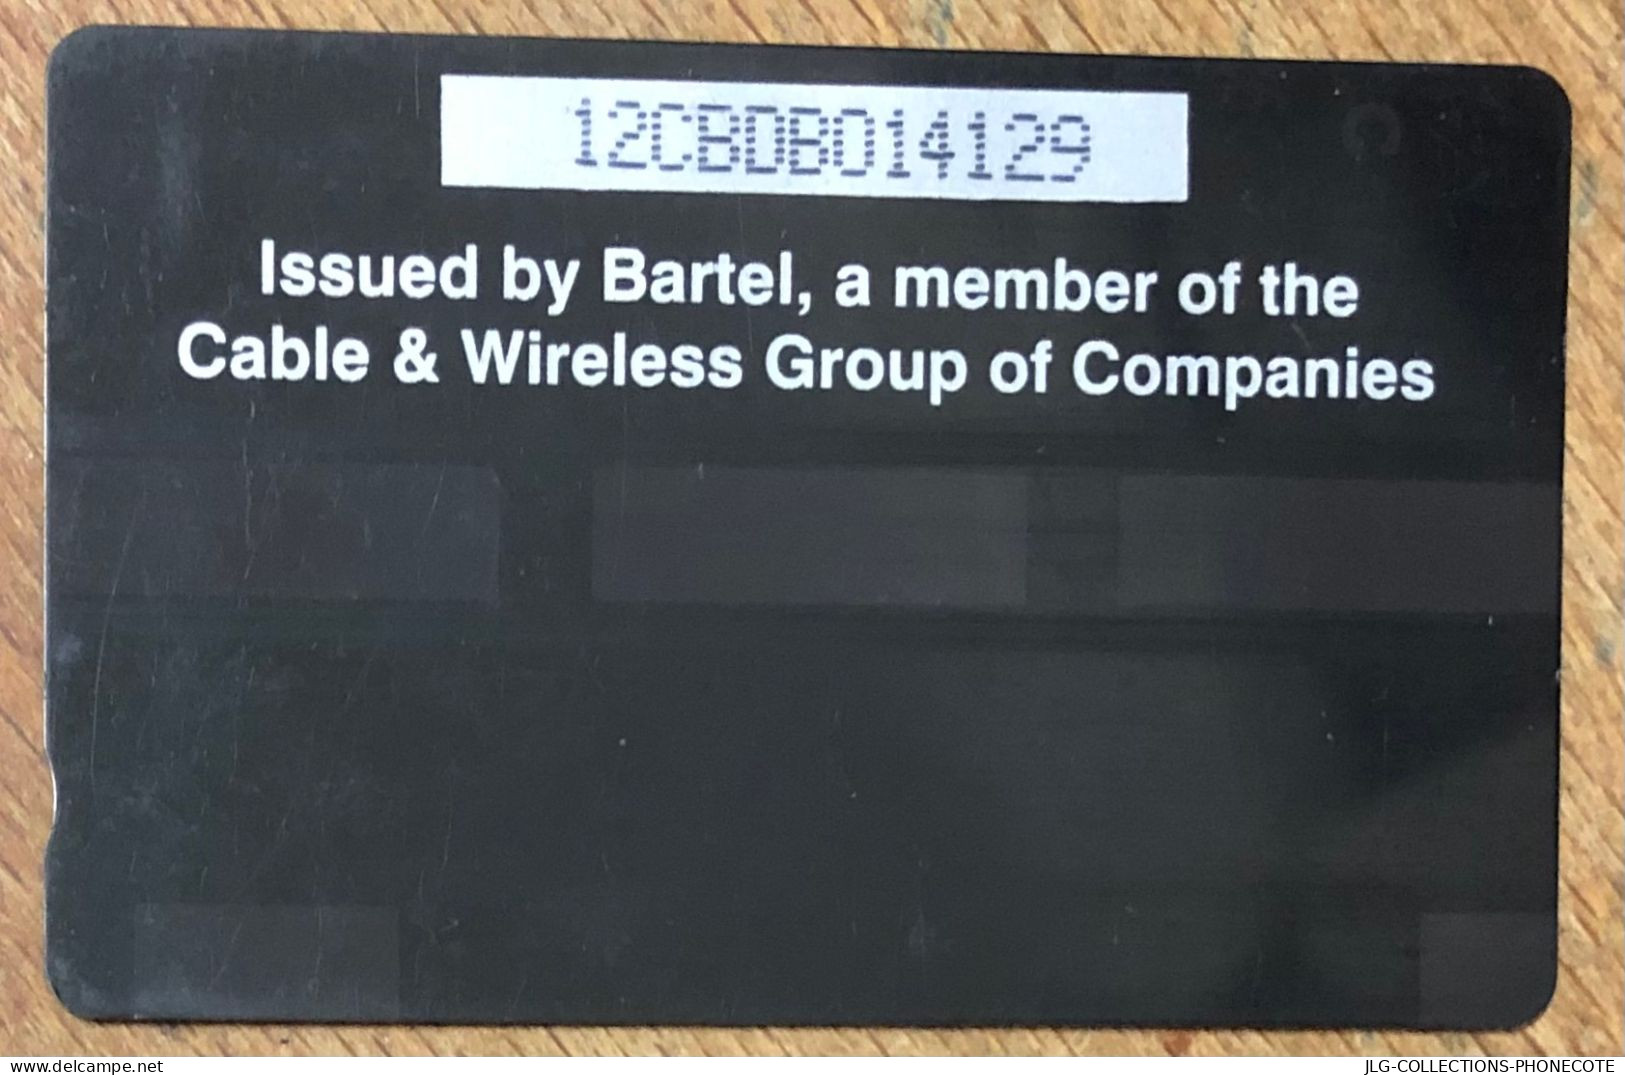 BARBADOS WINDSURFING B$ 20 CARIBBEAN CABLE & WIRELESS SCHEDA PREPAID TELECARTE TELEFONKARTE PHONECARD - Barbados (Barbuda)